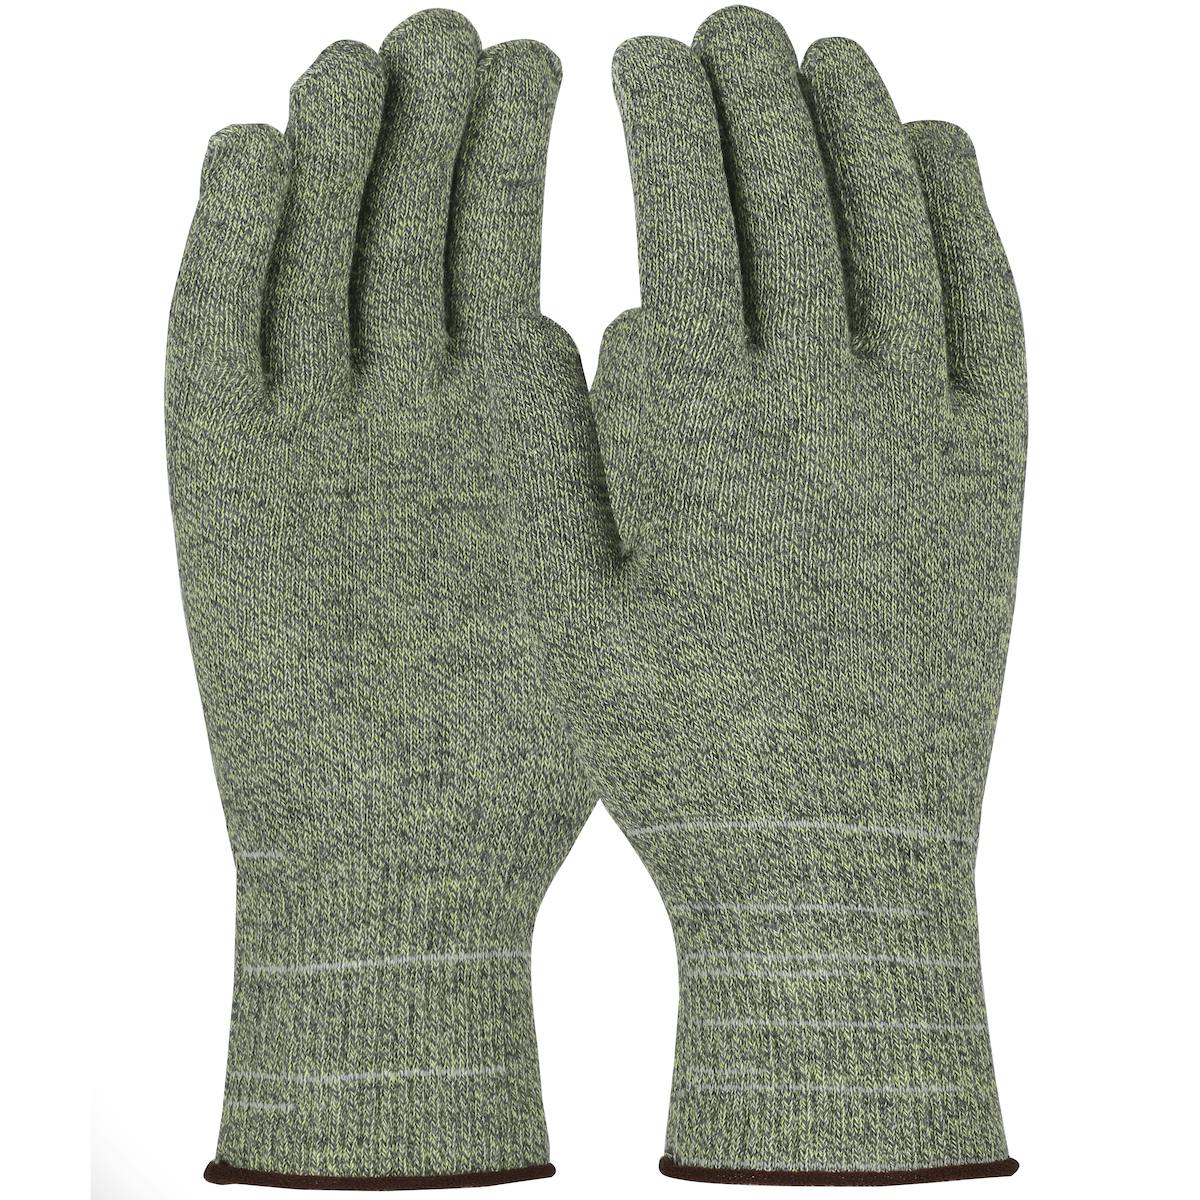 Kut Gard® Seamless Knit ATA® Hide-Away™ / Elastane Blended Glove - Light Weight (M530)_0